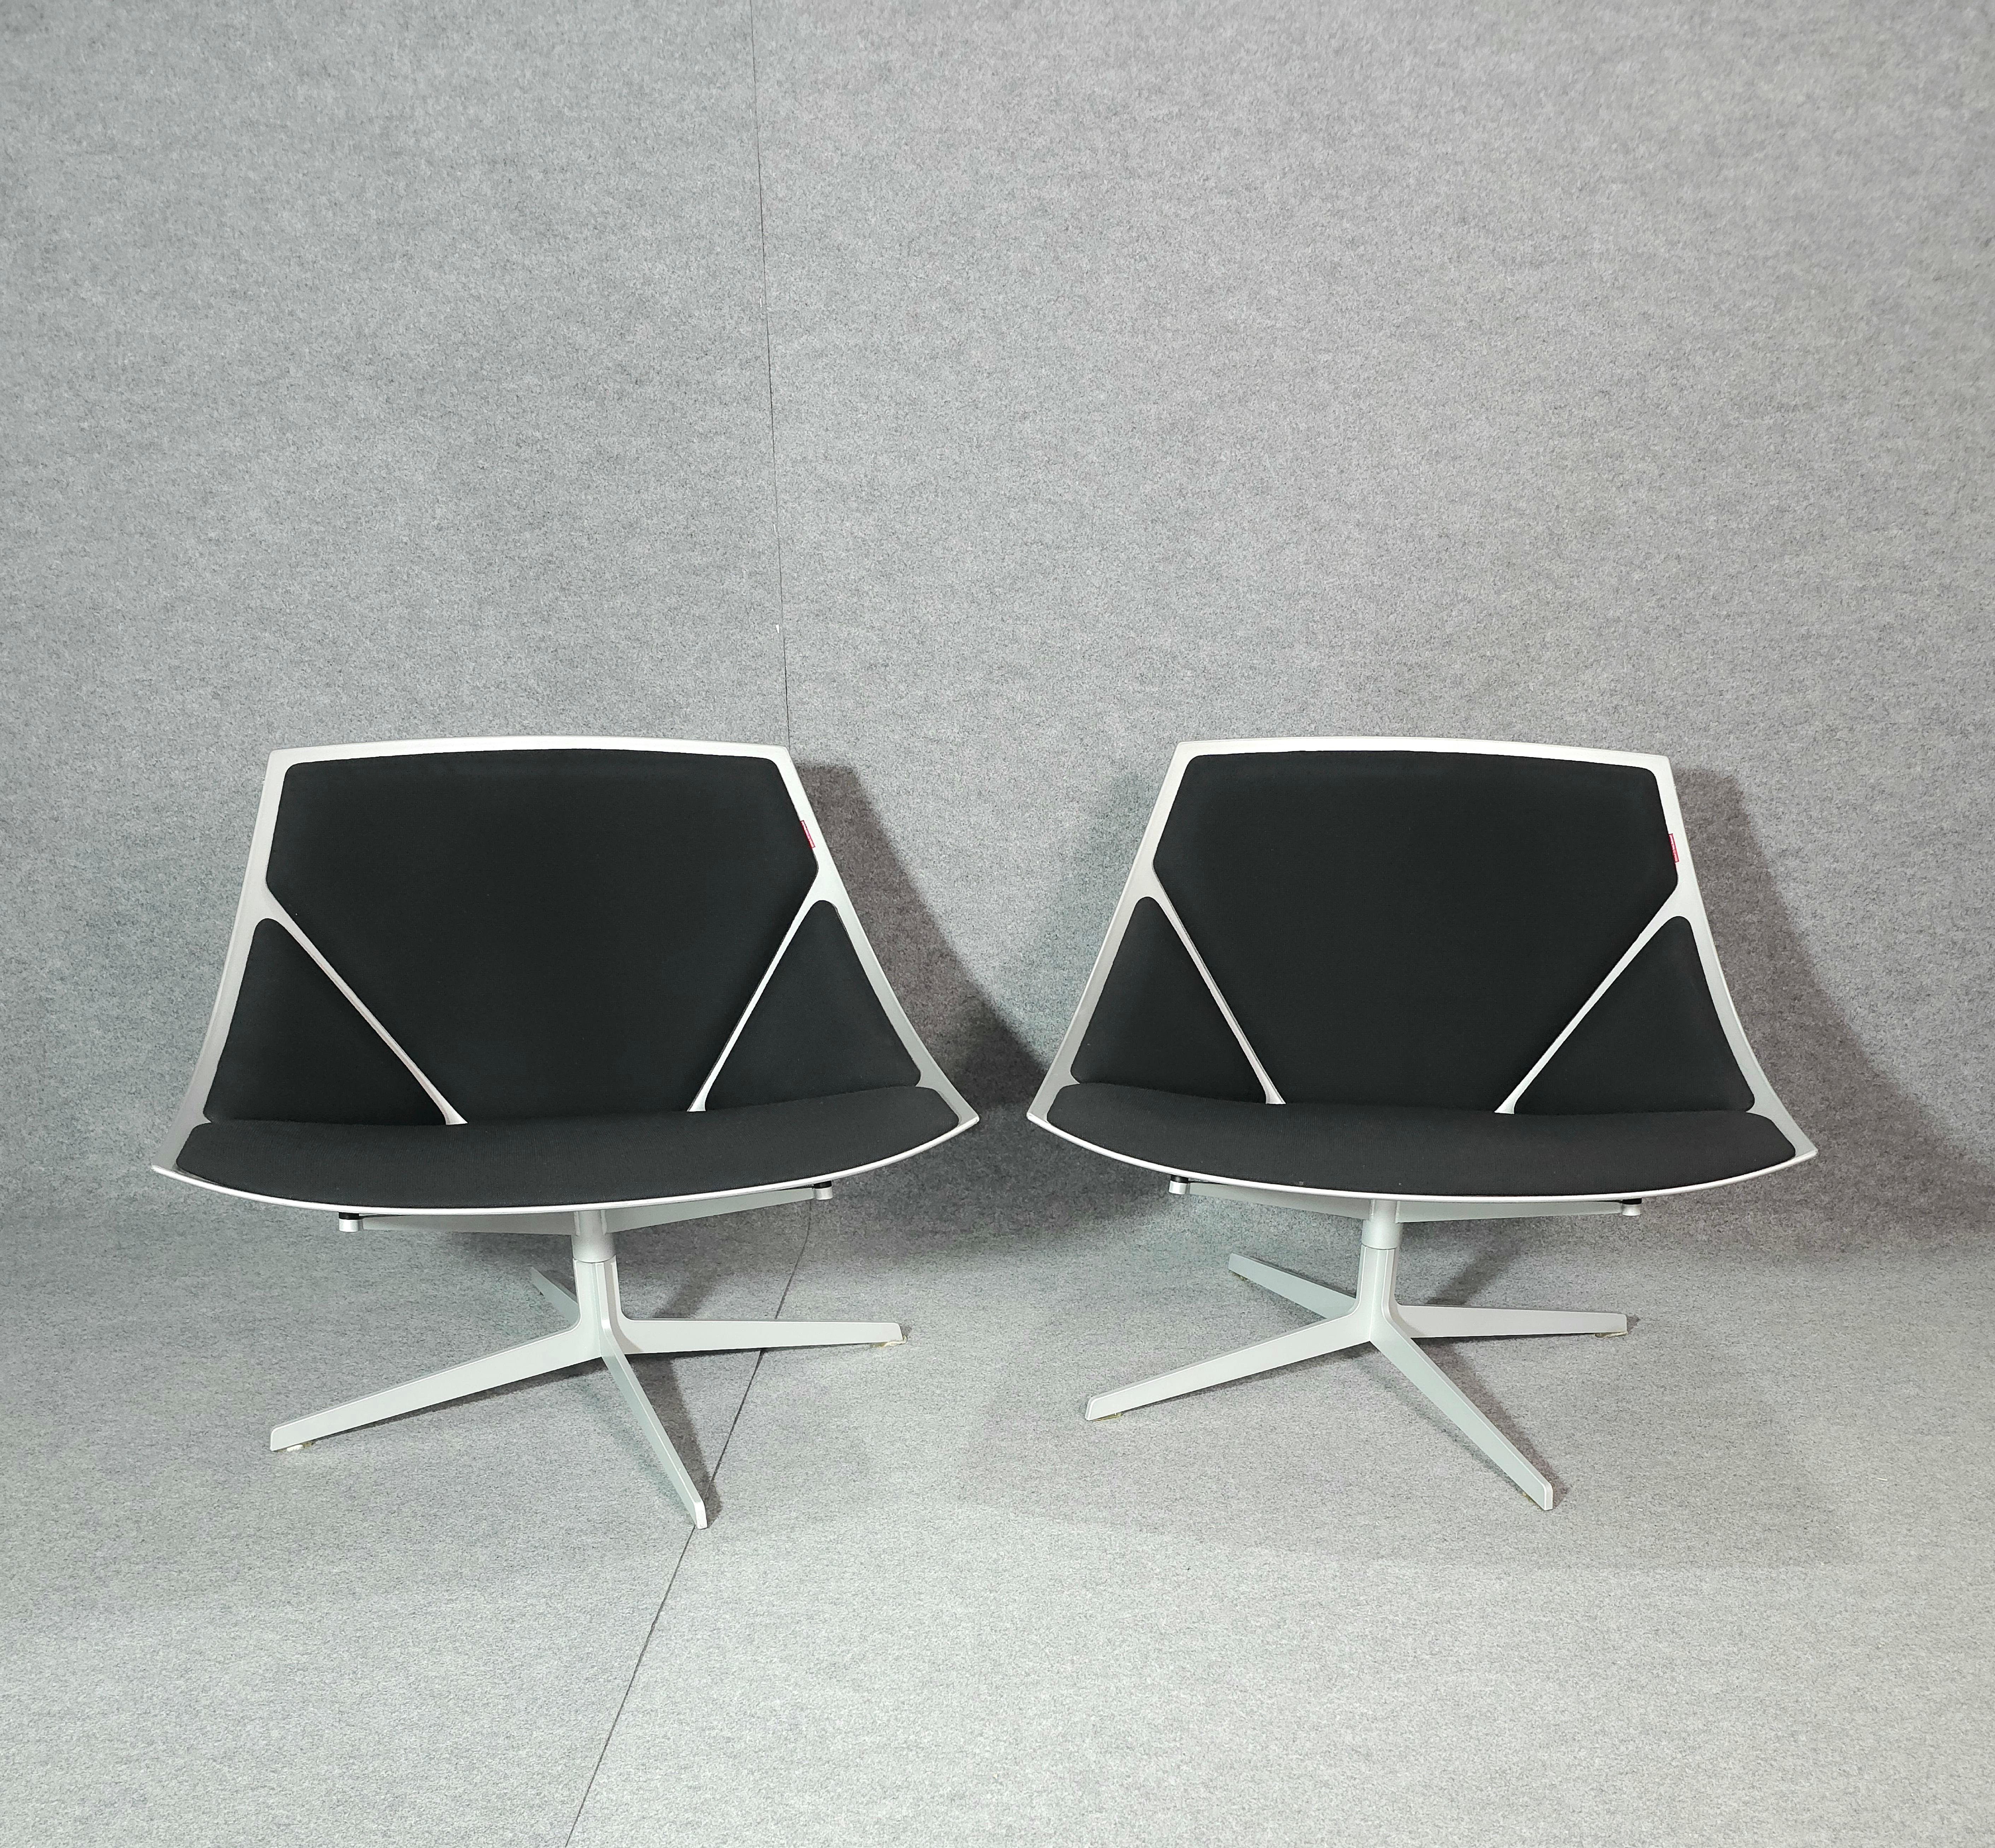 Danish Jehs & Laub for Fritz Hansen Swivel Chair Modern Pair Denmark Design 2007 For Sale